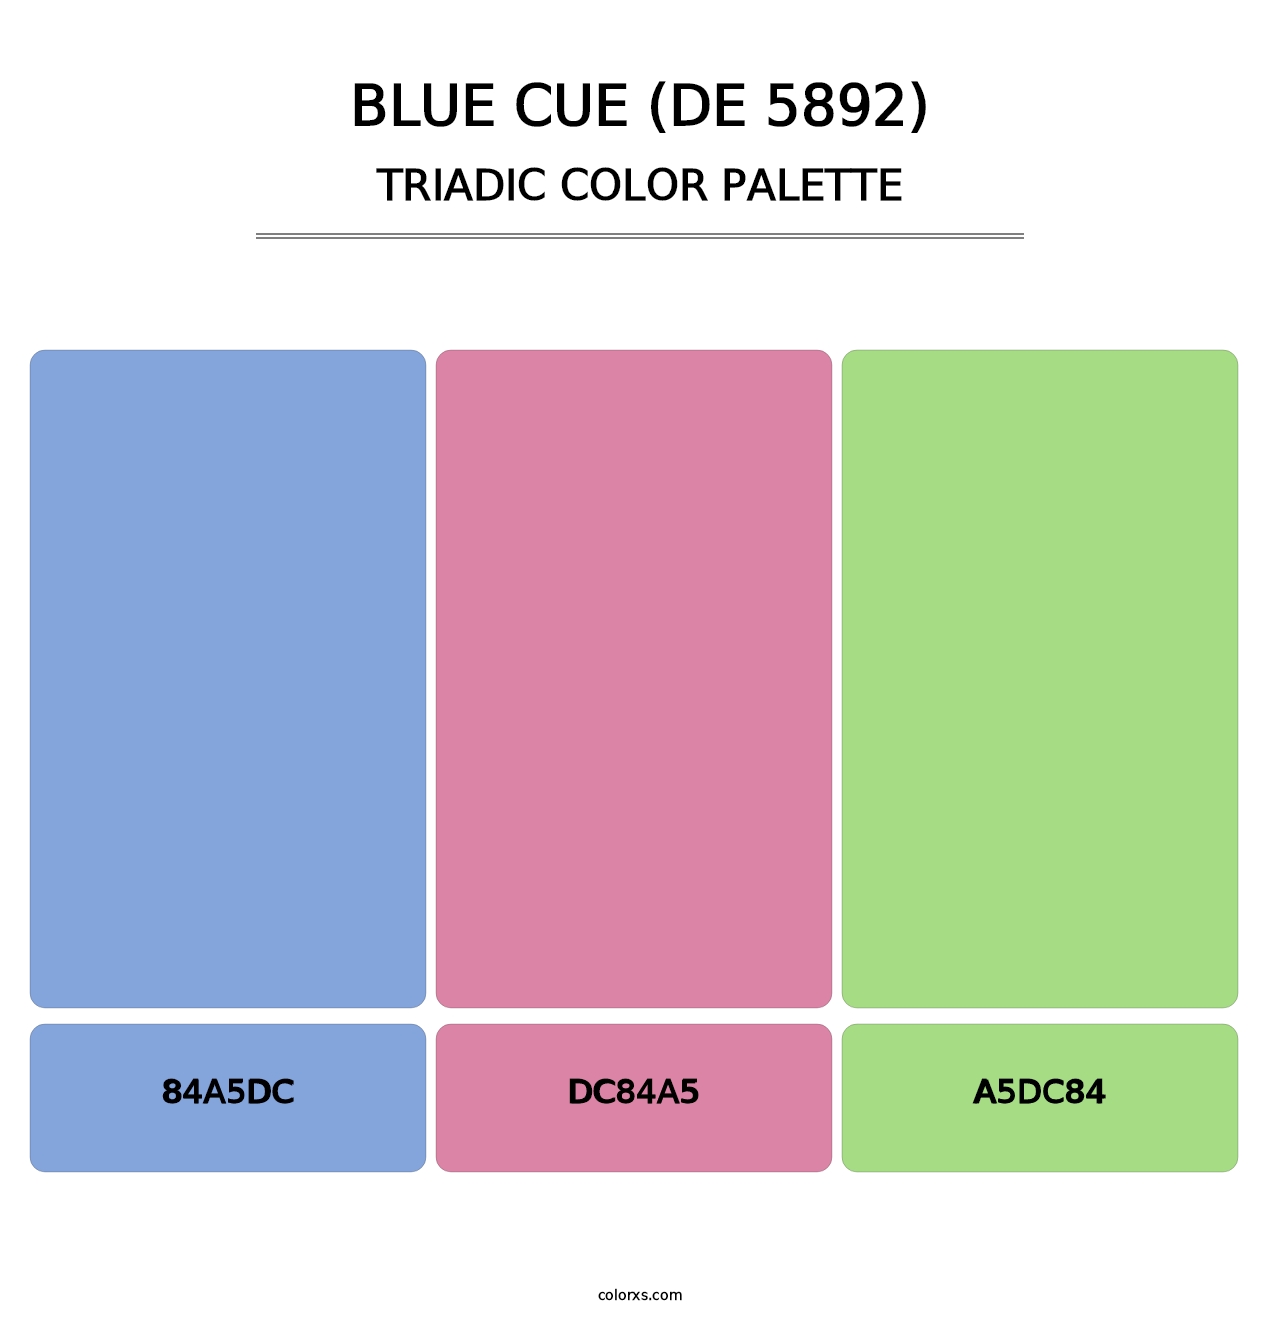 Blue Cue (DE 5892) - Triadic Color Palette